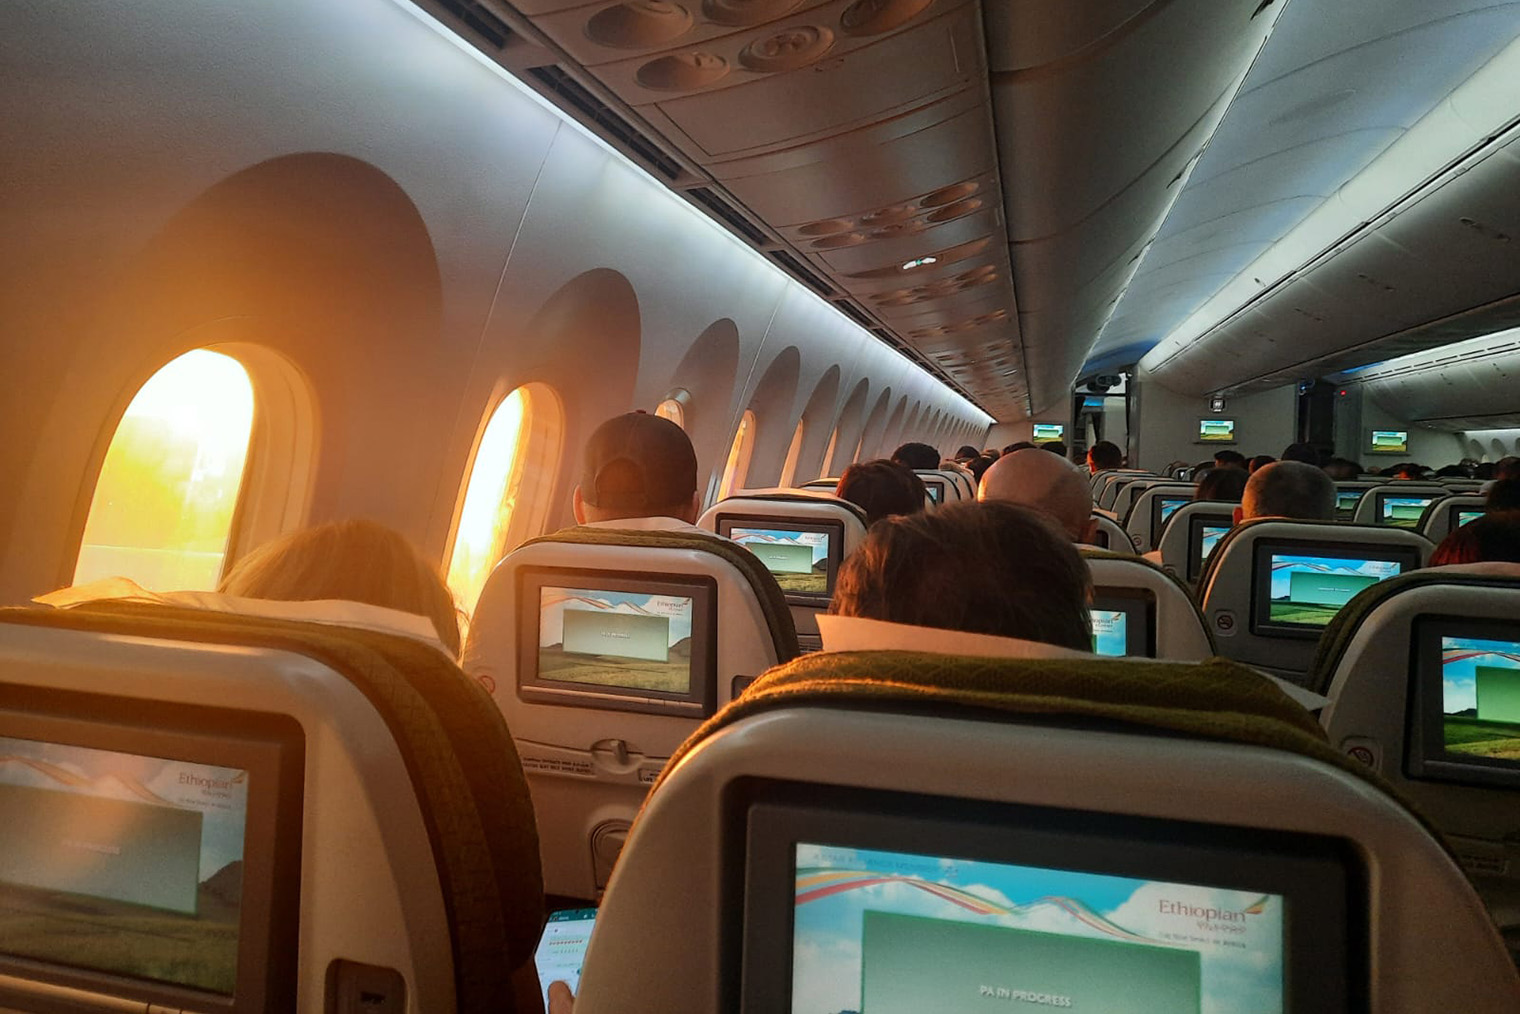 Салон самолета Ethiopian Airlines